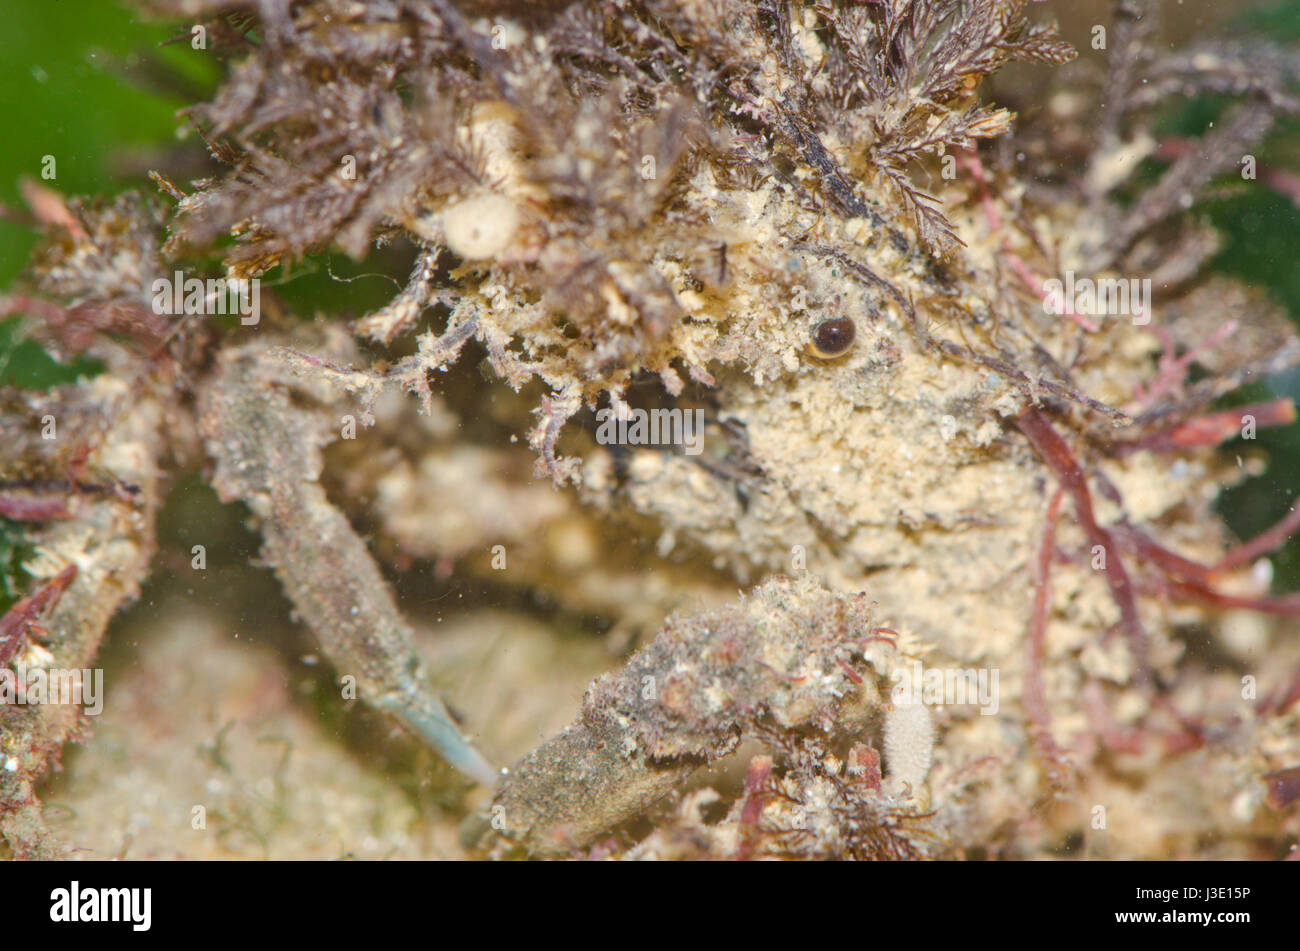 Close Up Spider Crab Stock Photo